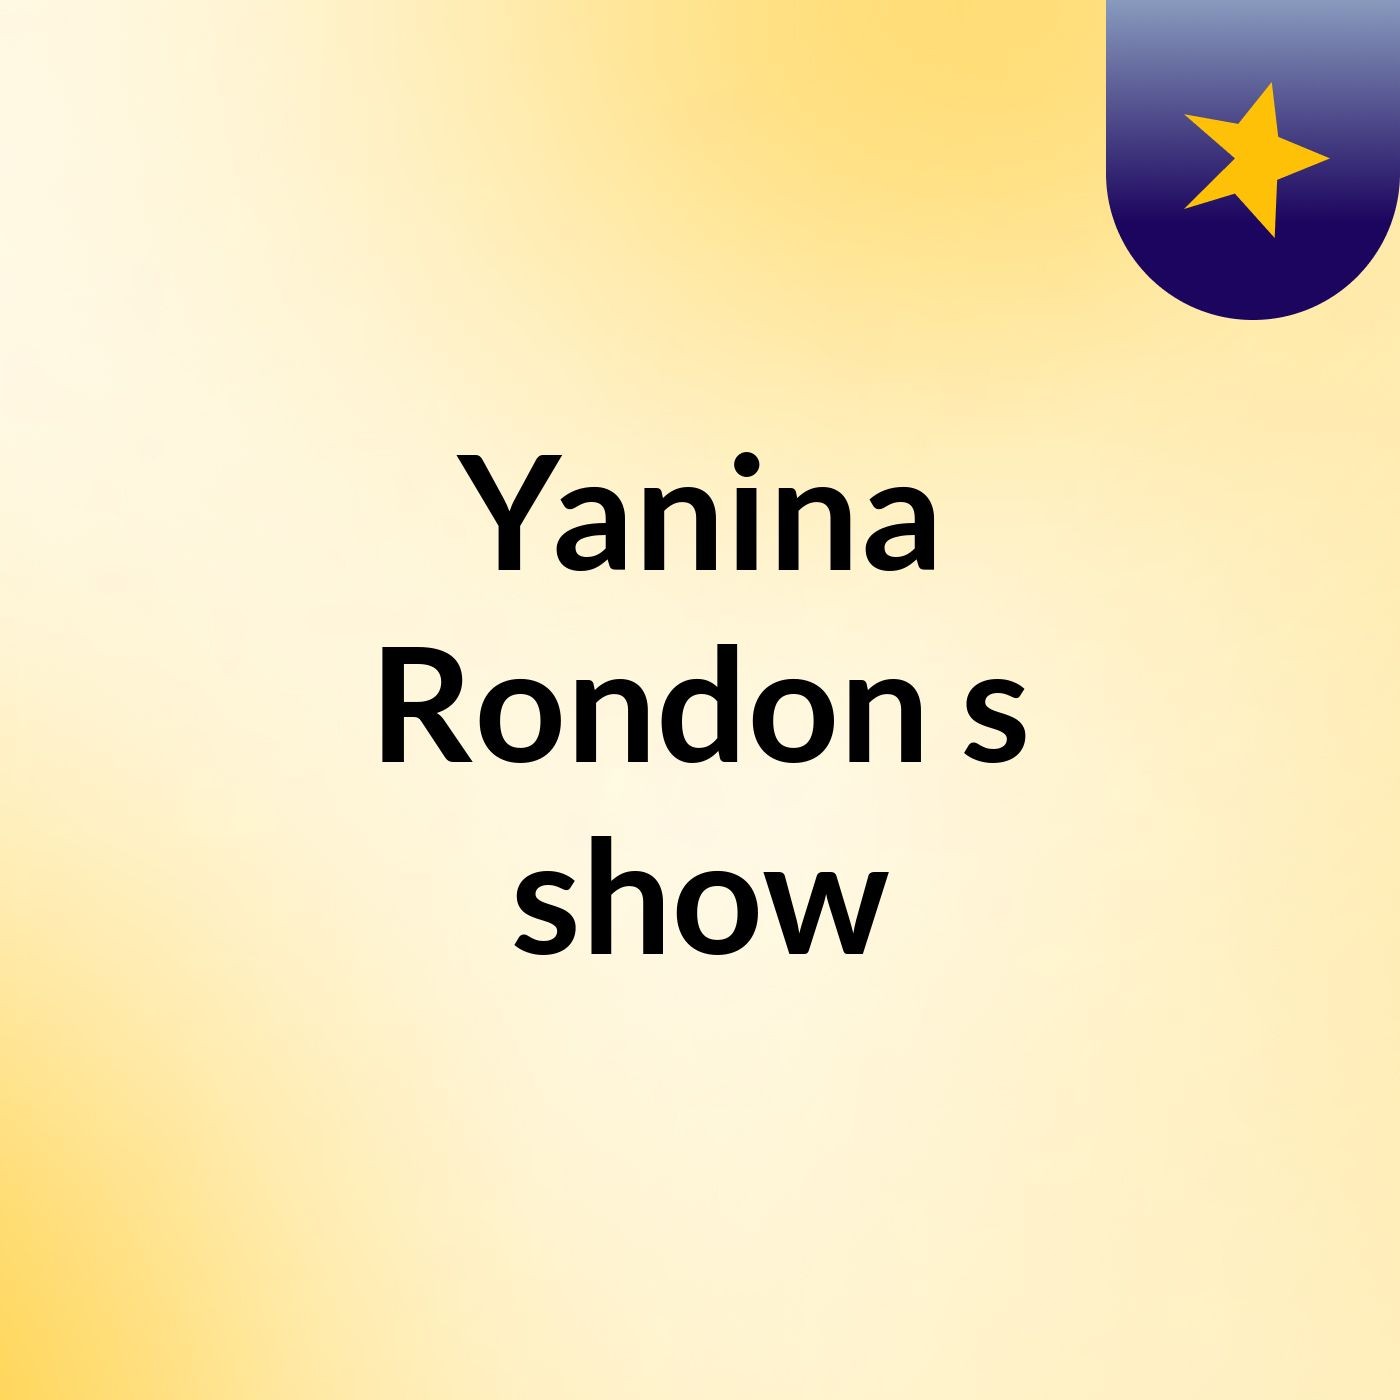 Yanina Rondon's show